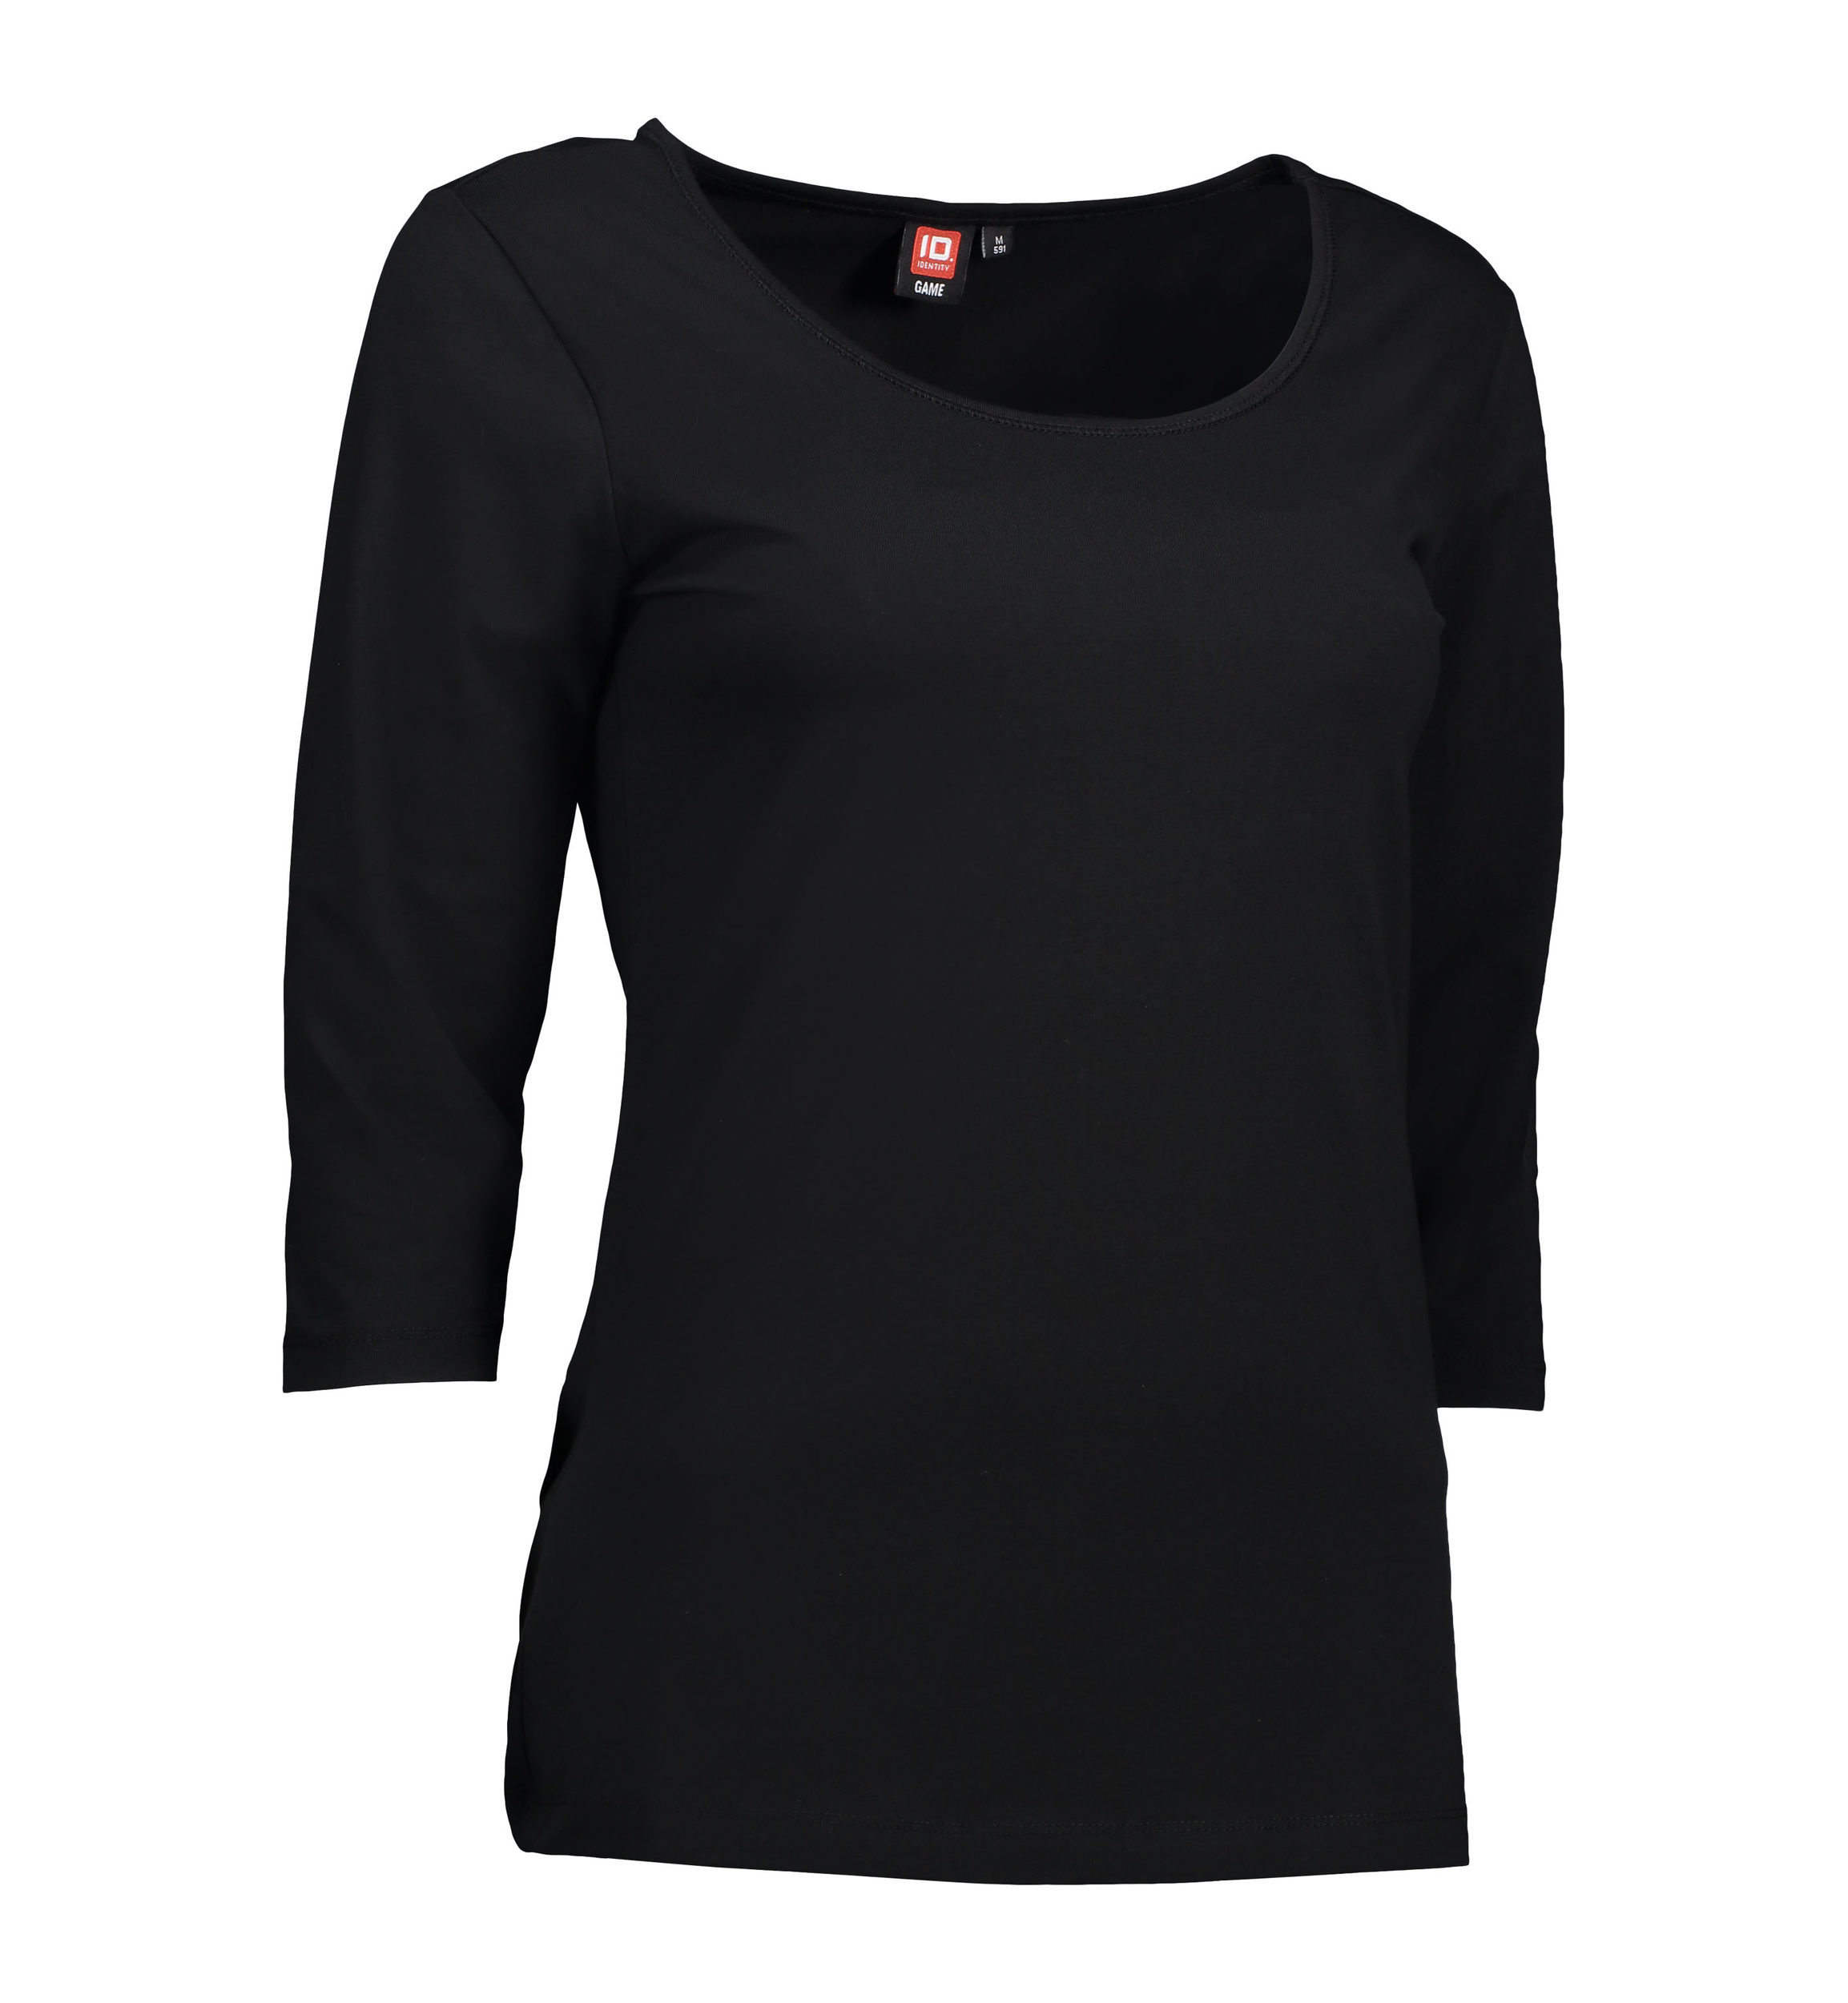 Se 3/4-ærmet dame t-shirt i sort - XL hos Sygeplejebutikken.dk